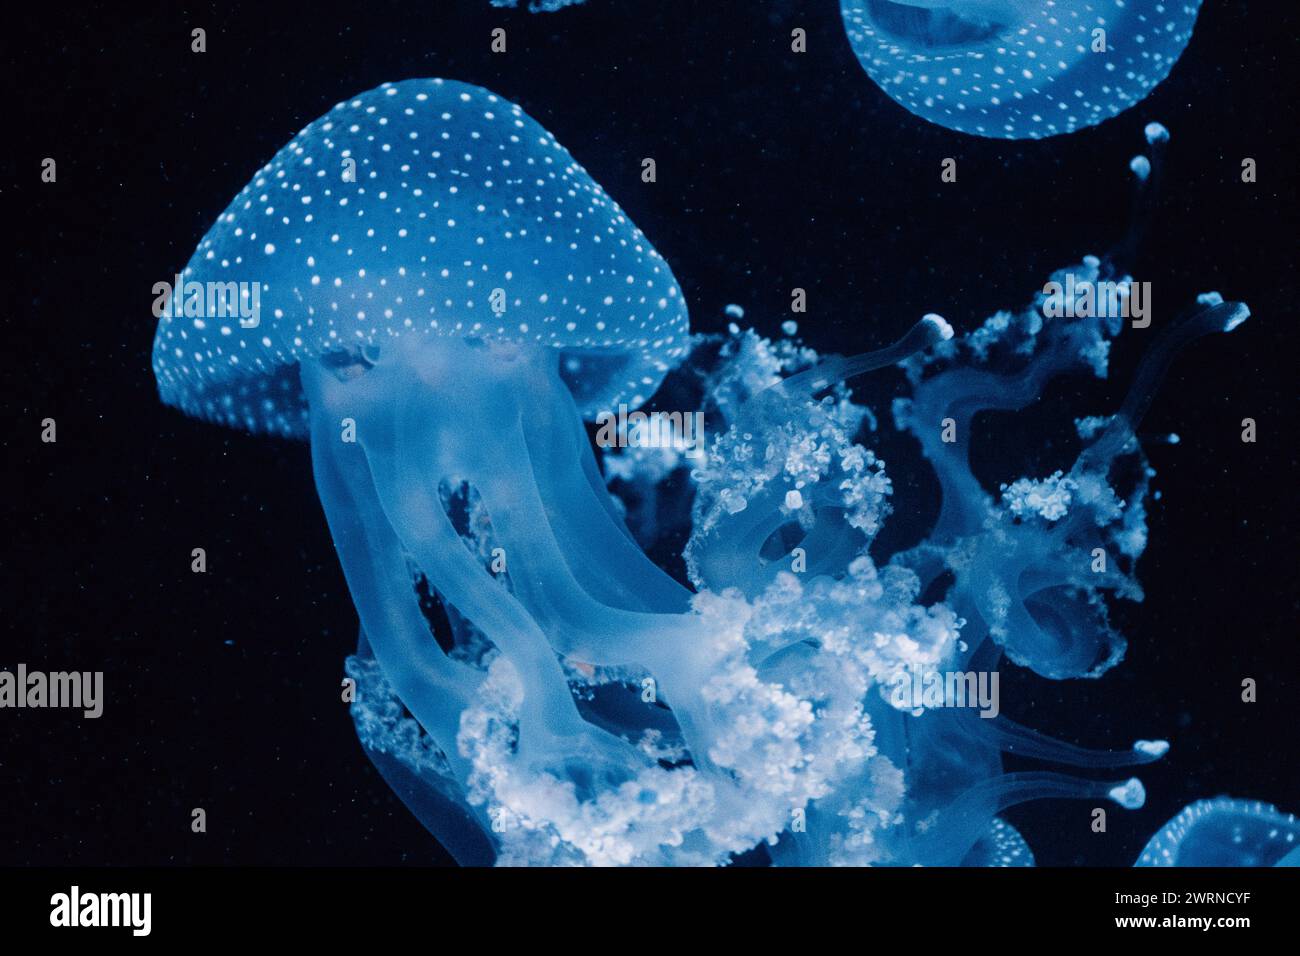 Schwarm von gefleckten blauen Quallen, ihre Tentakeln ziehen nach unten, treiben in den ruhigen, dunklen Tiefen des Ozeans Stockfoto